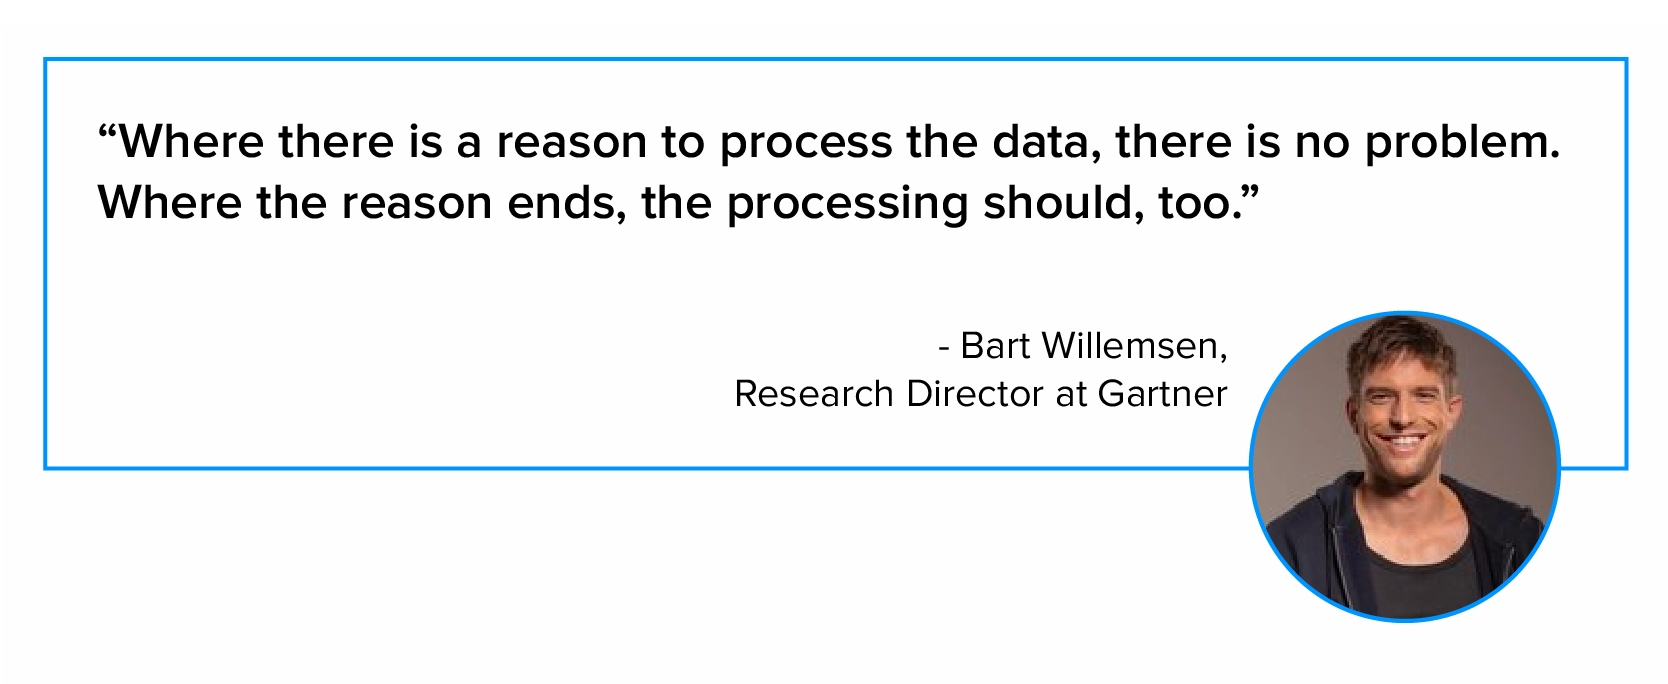 巴特·威廉森 (Bart Willemsen) 关于数据处理的引述